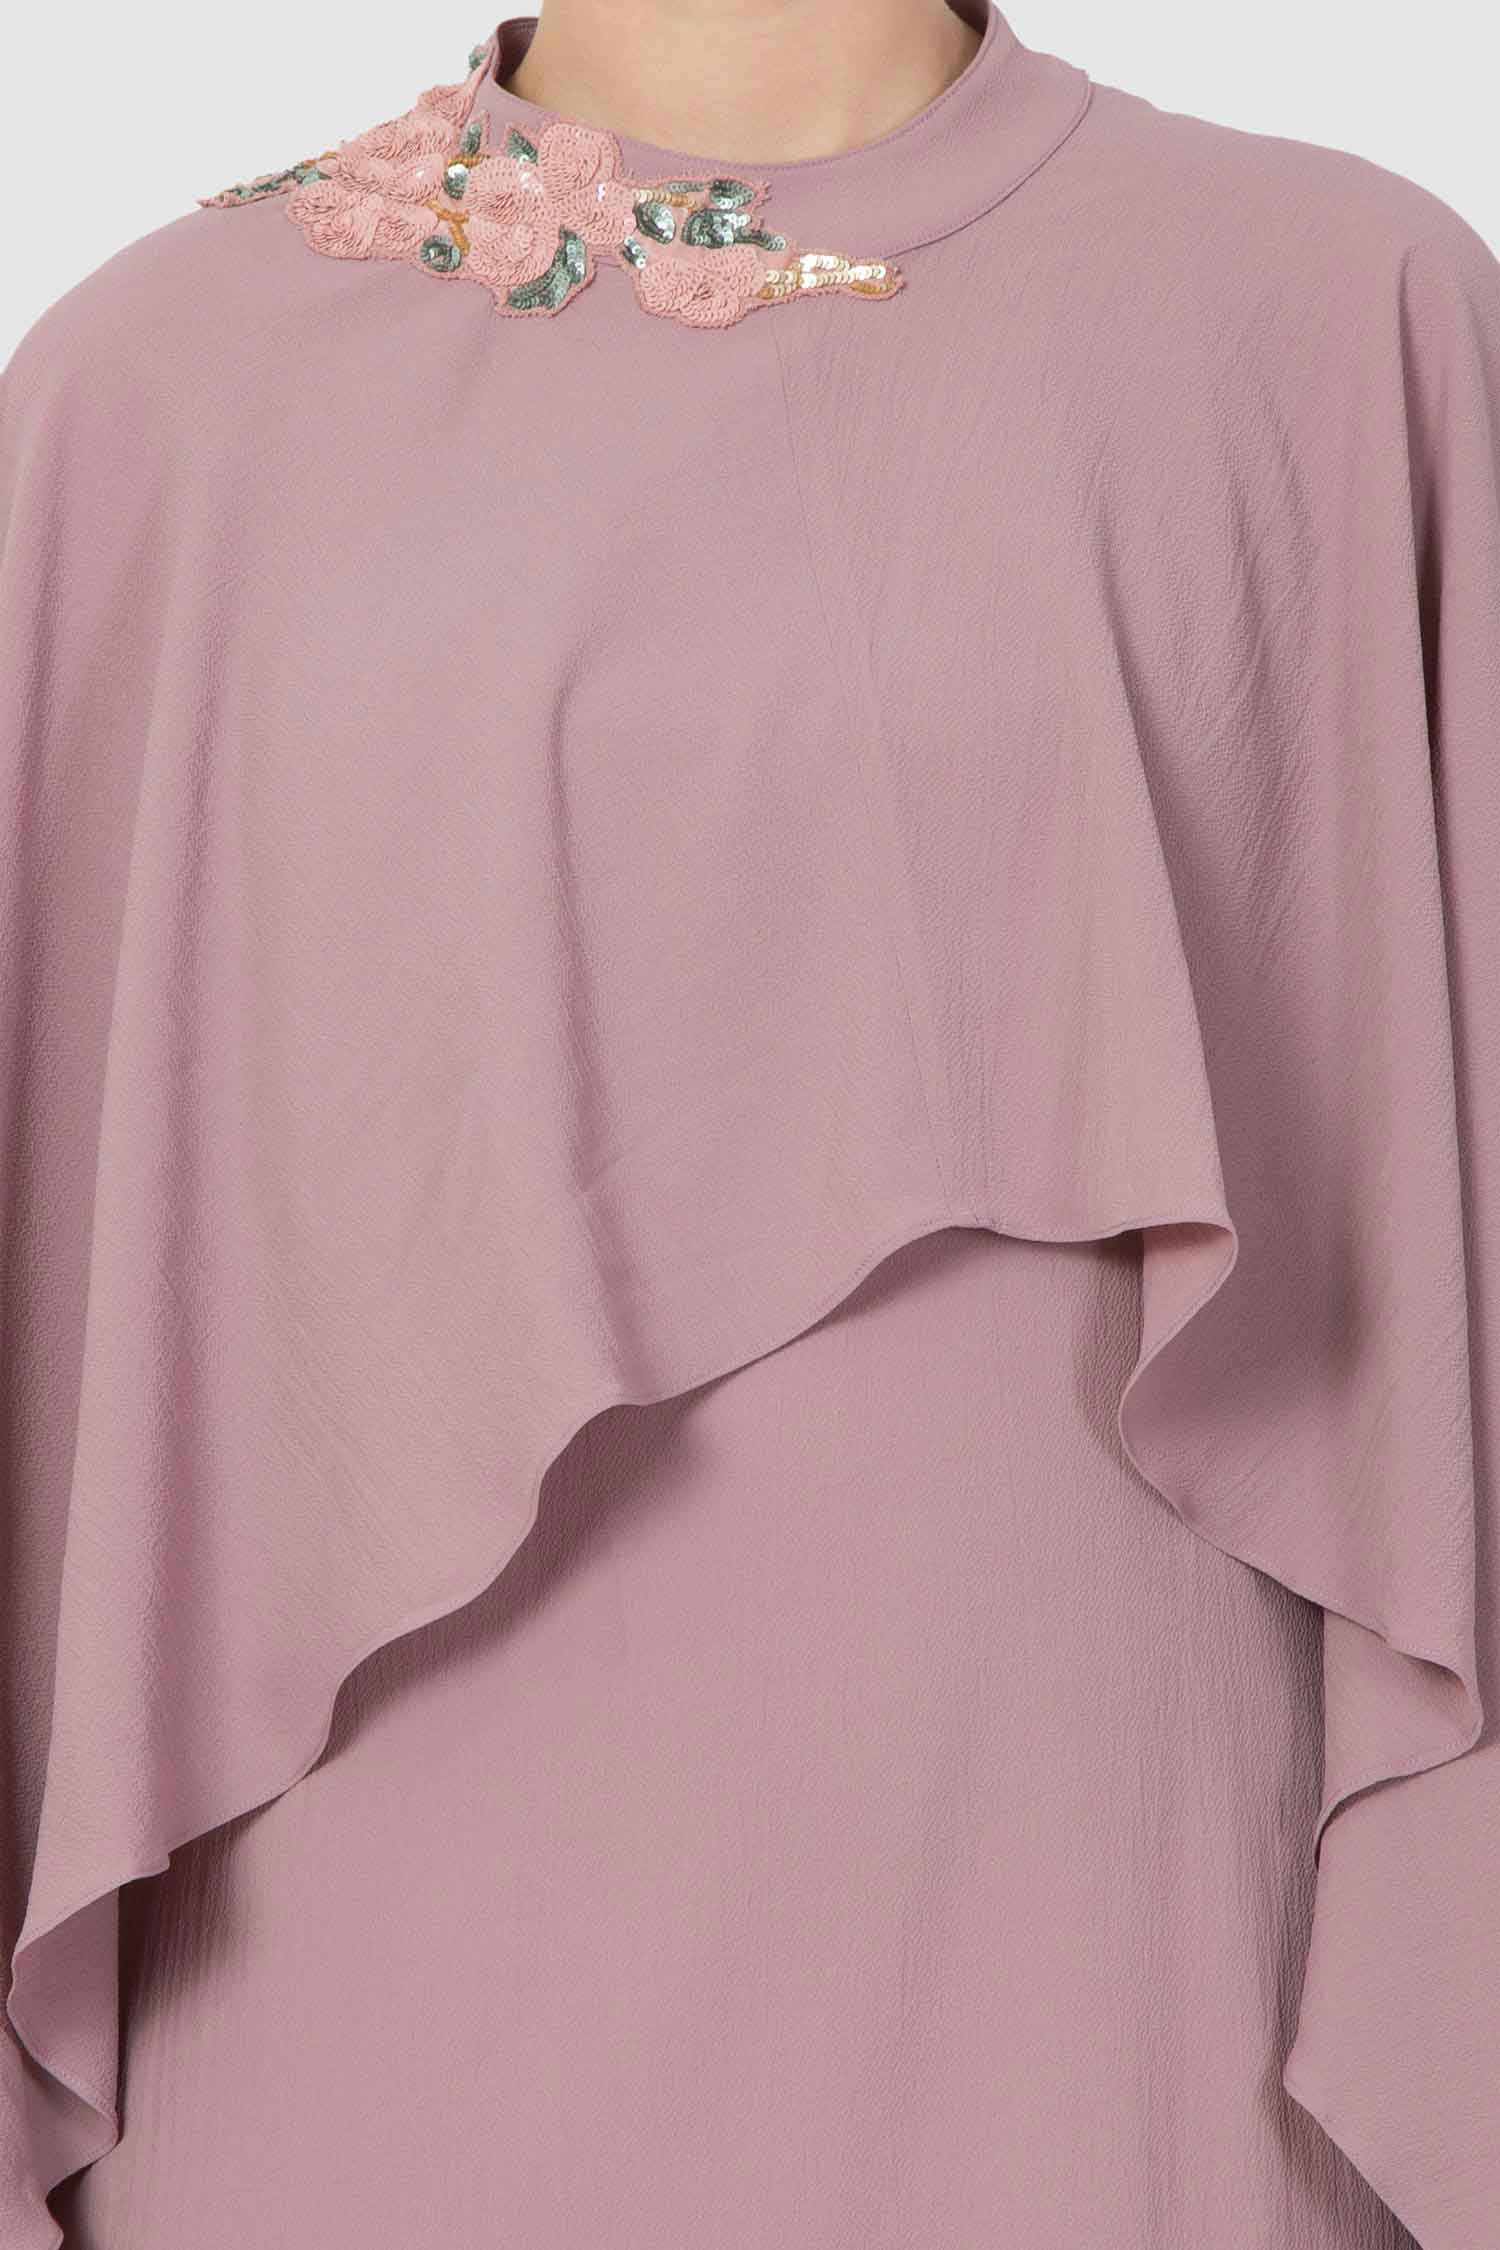 Lilac Scarf Drape Embellished Tunic